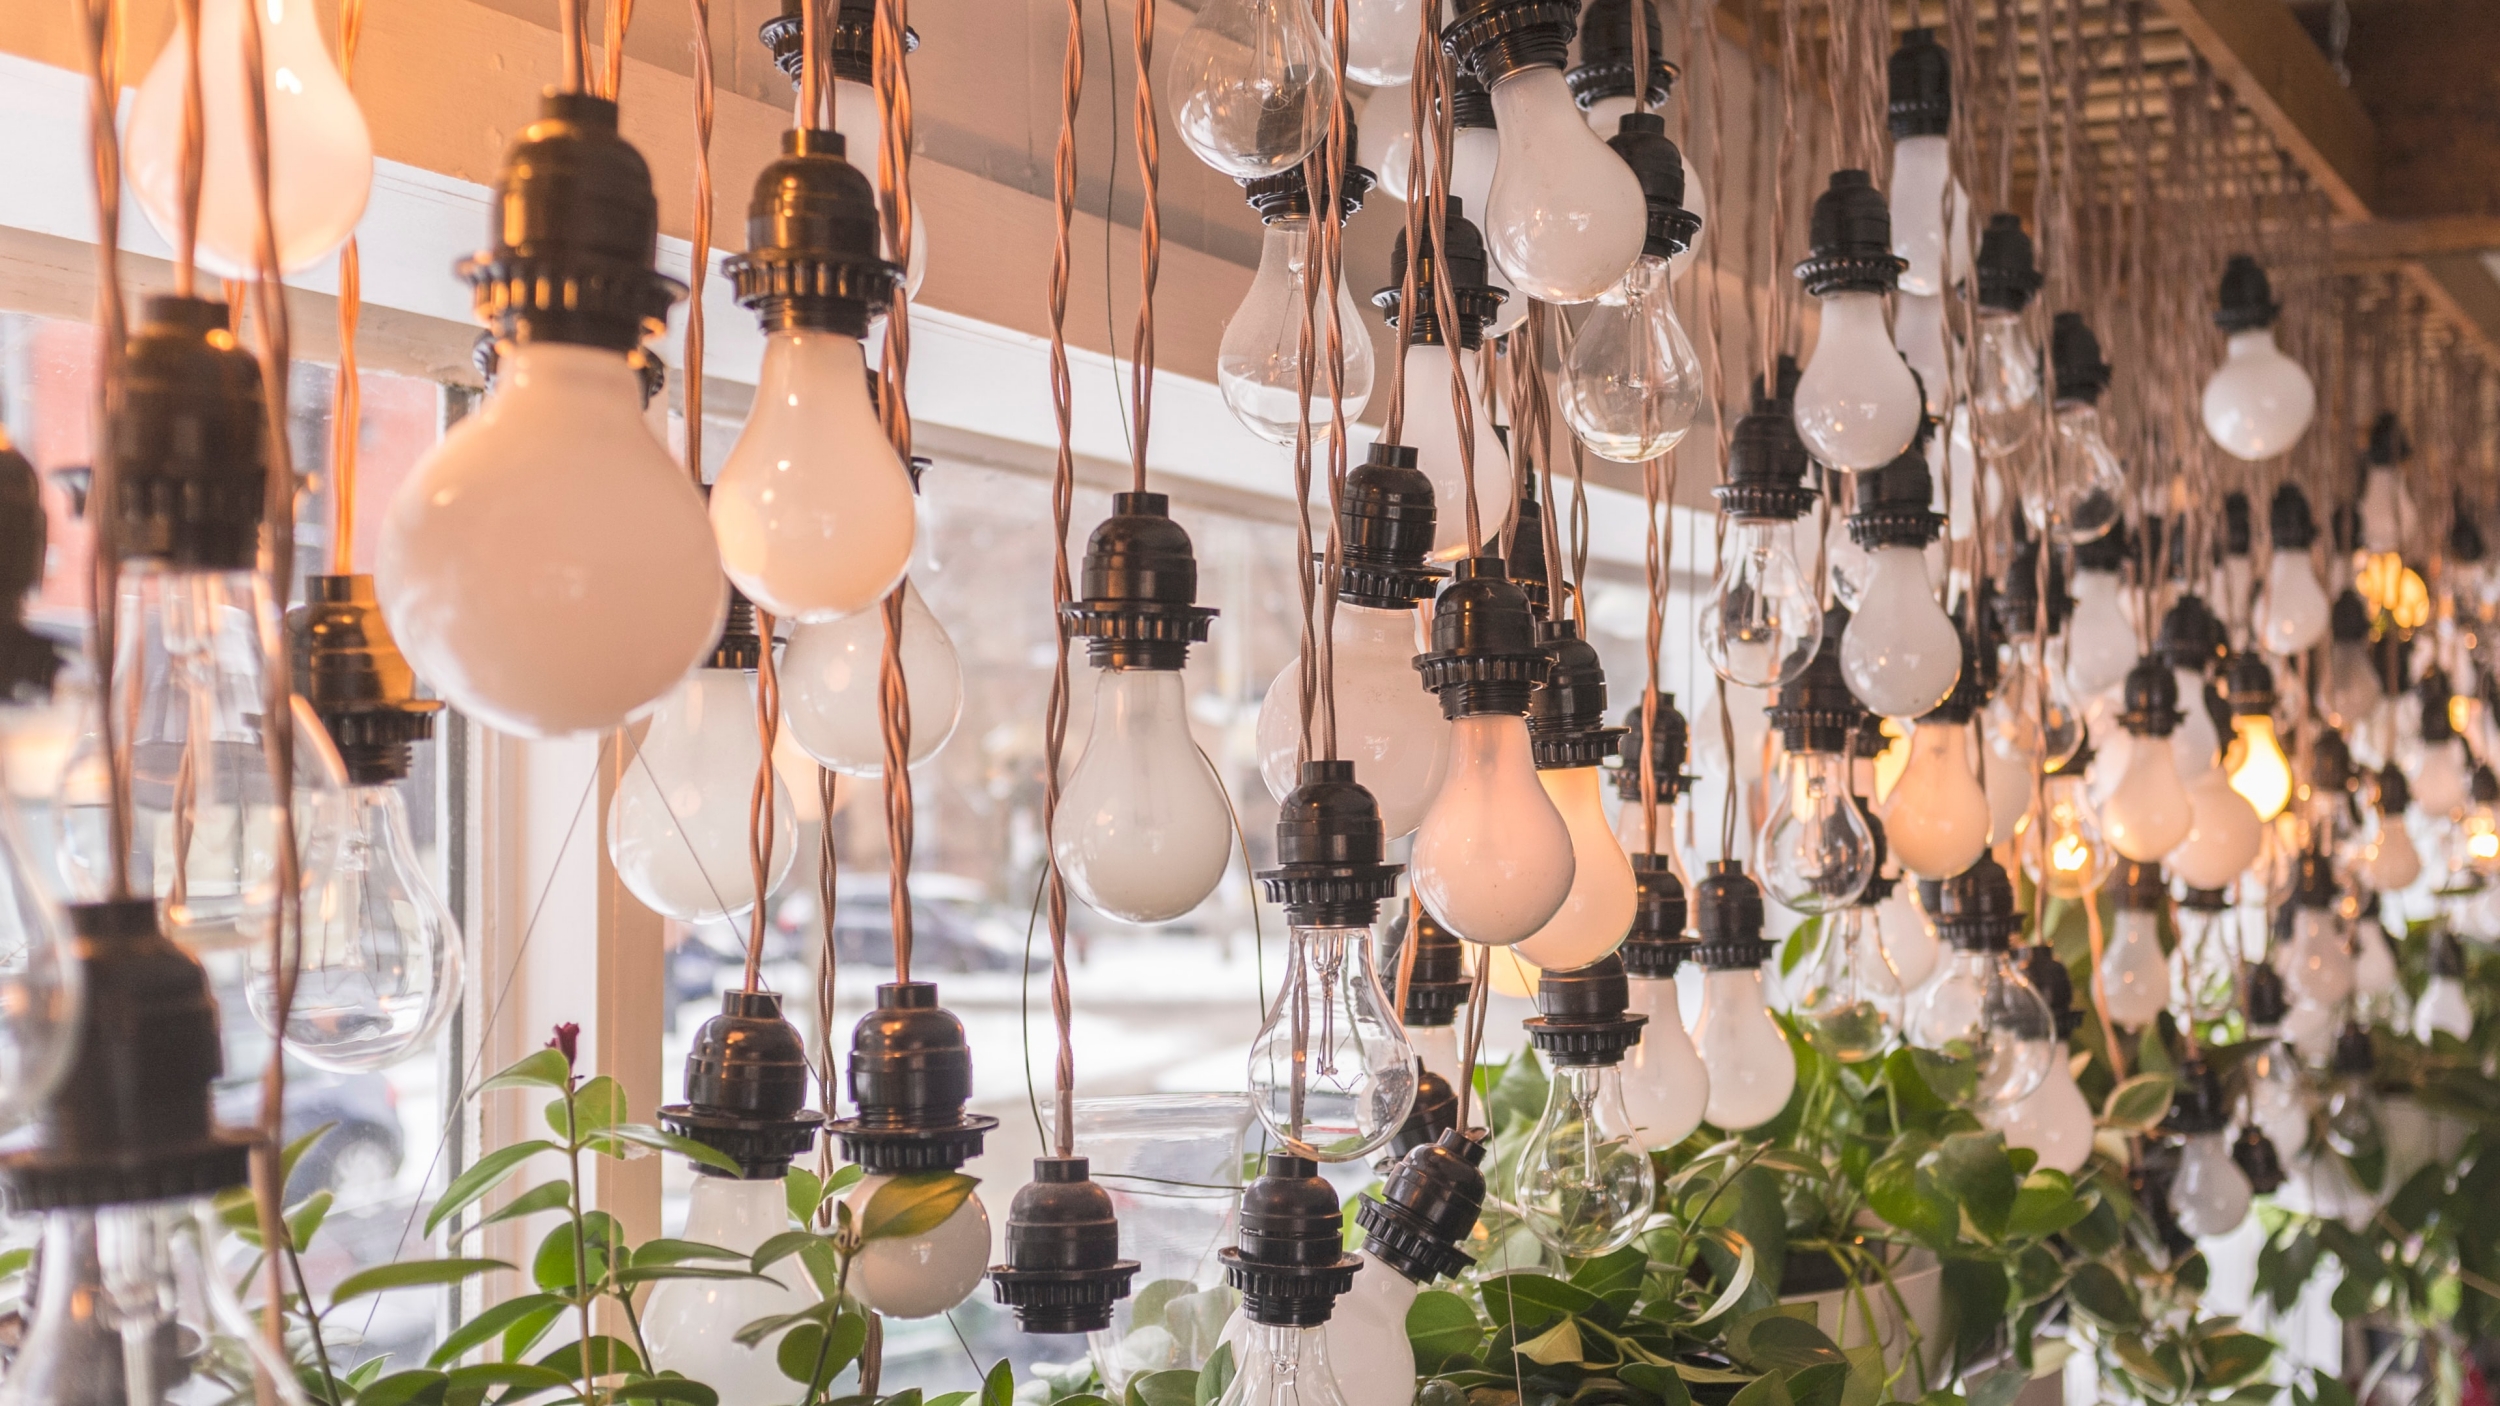 Dozens of hanging lightbulbs